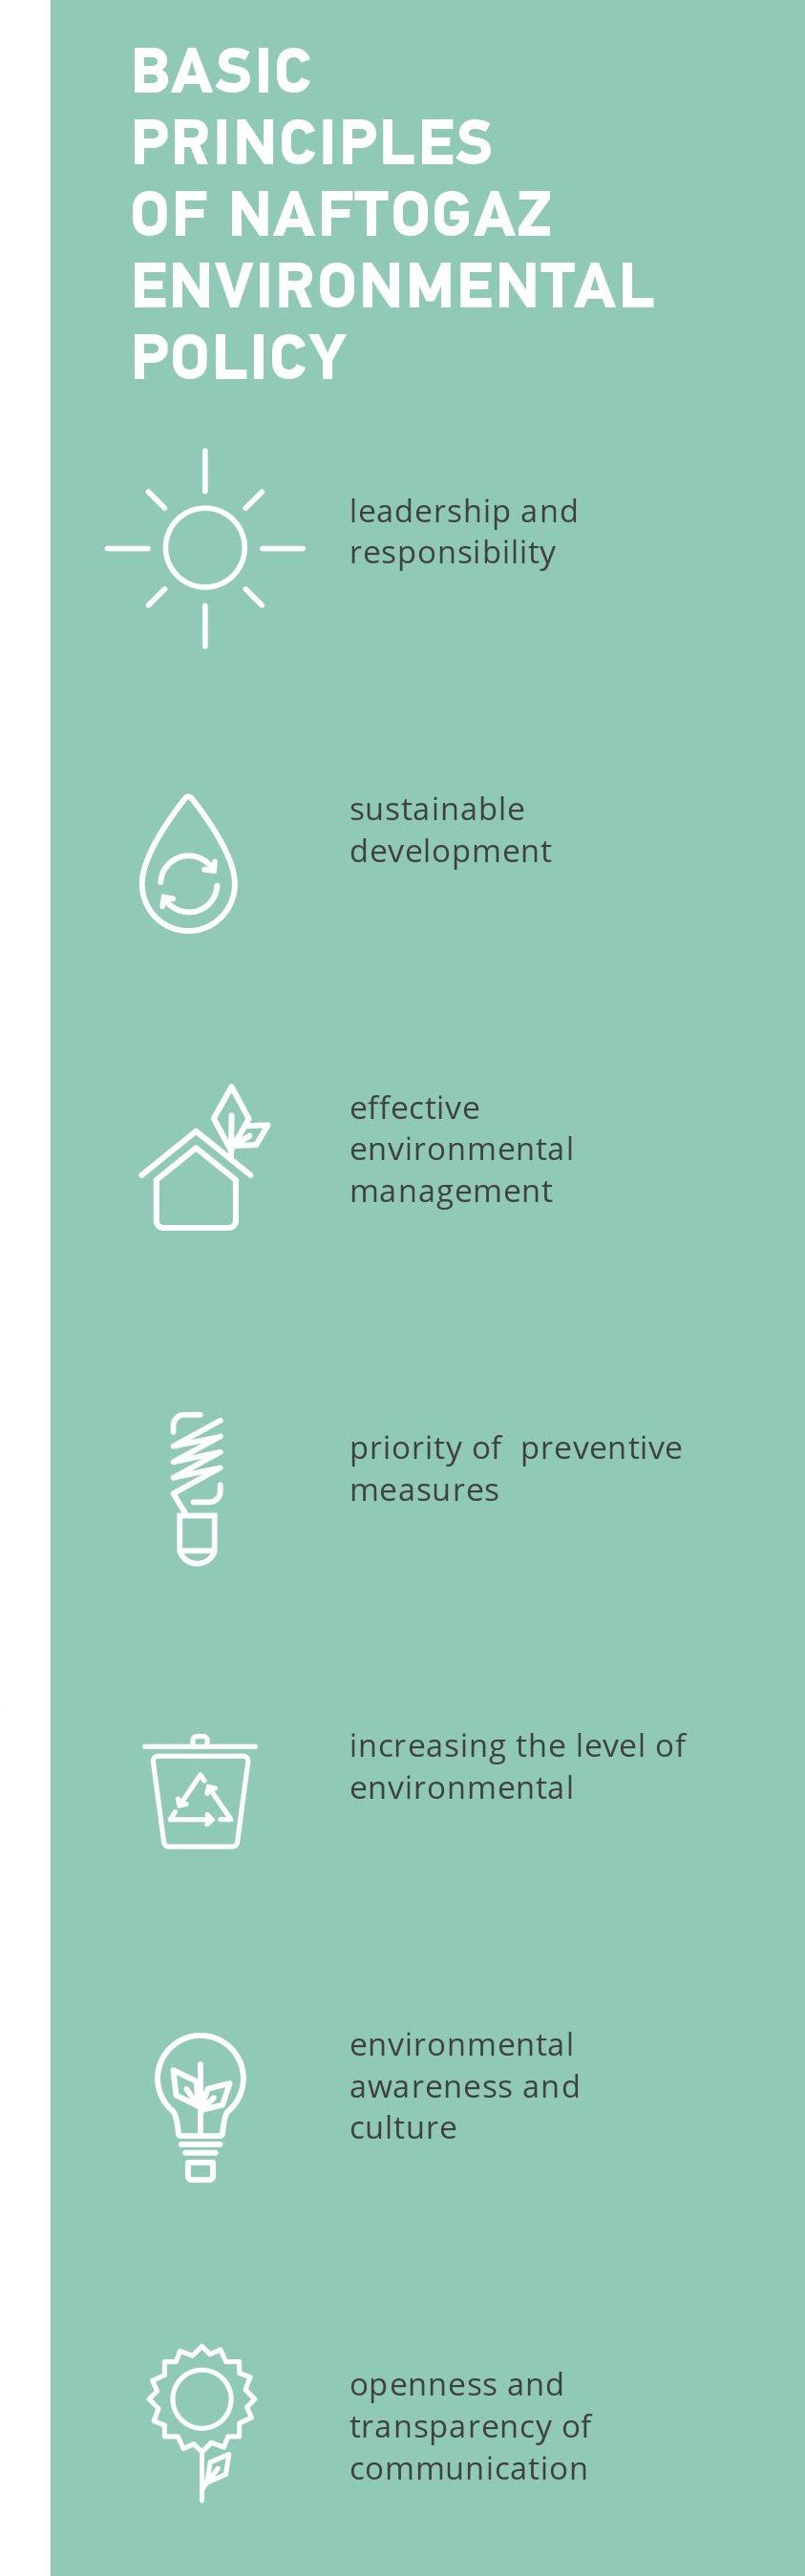 Basic principles of Naftogaz environmental policy